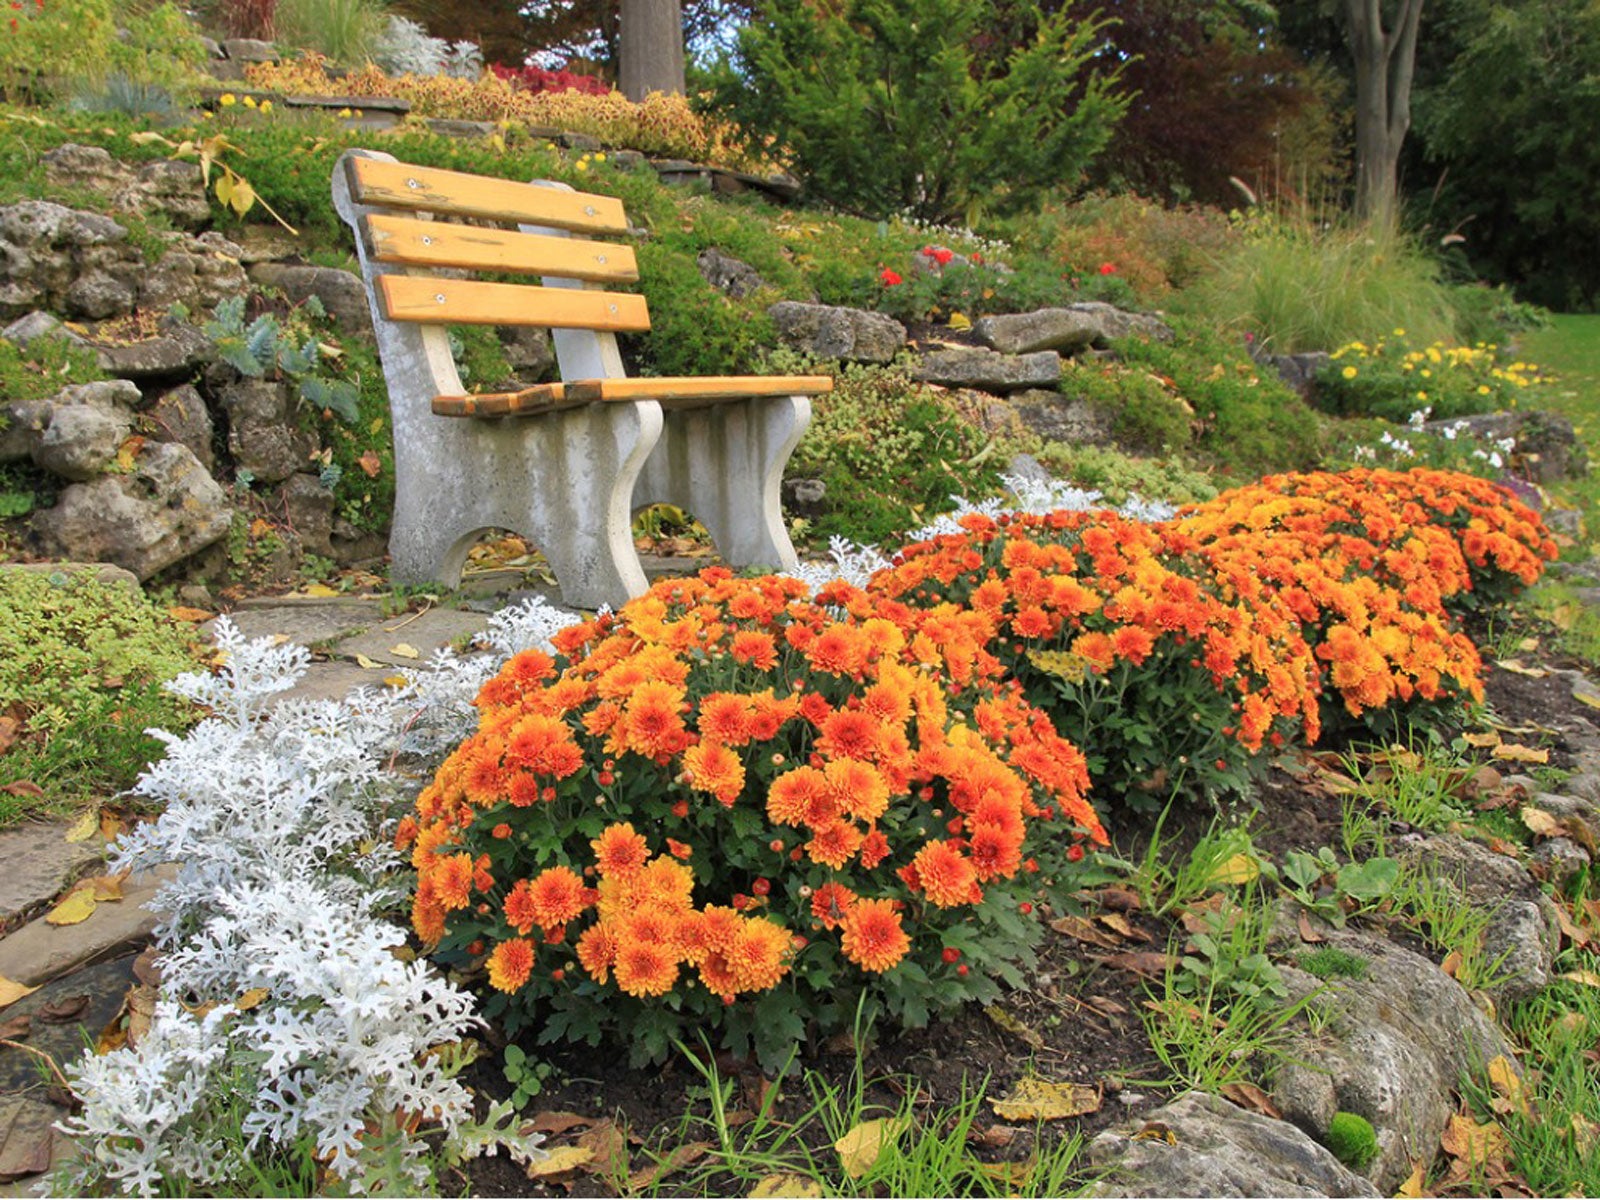 Autumn Gardening Ideas – Planting Fall Garden Flowers